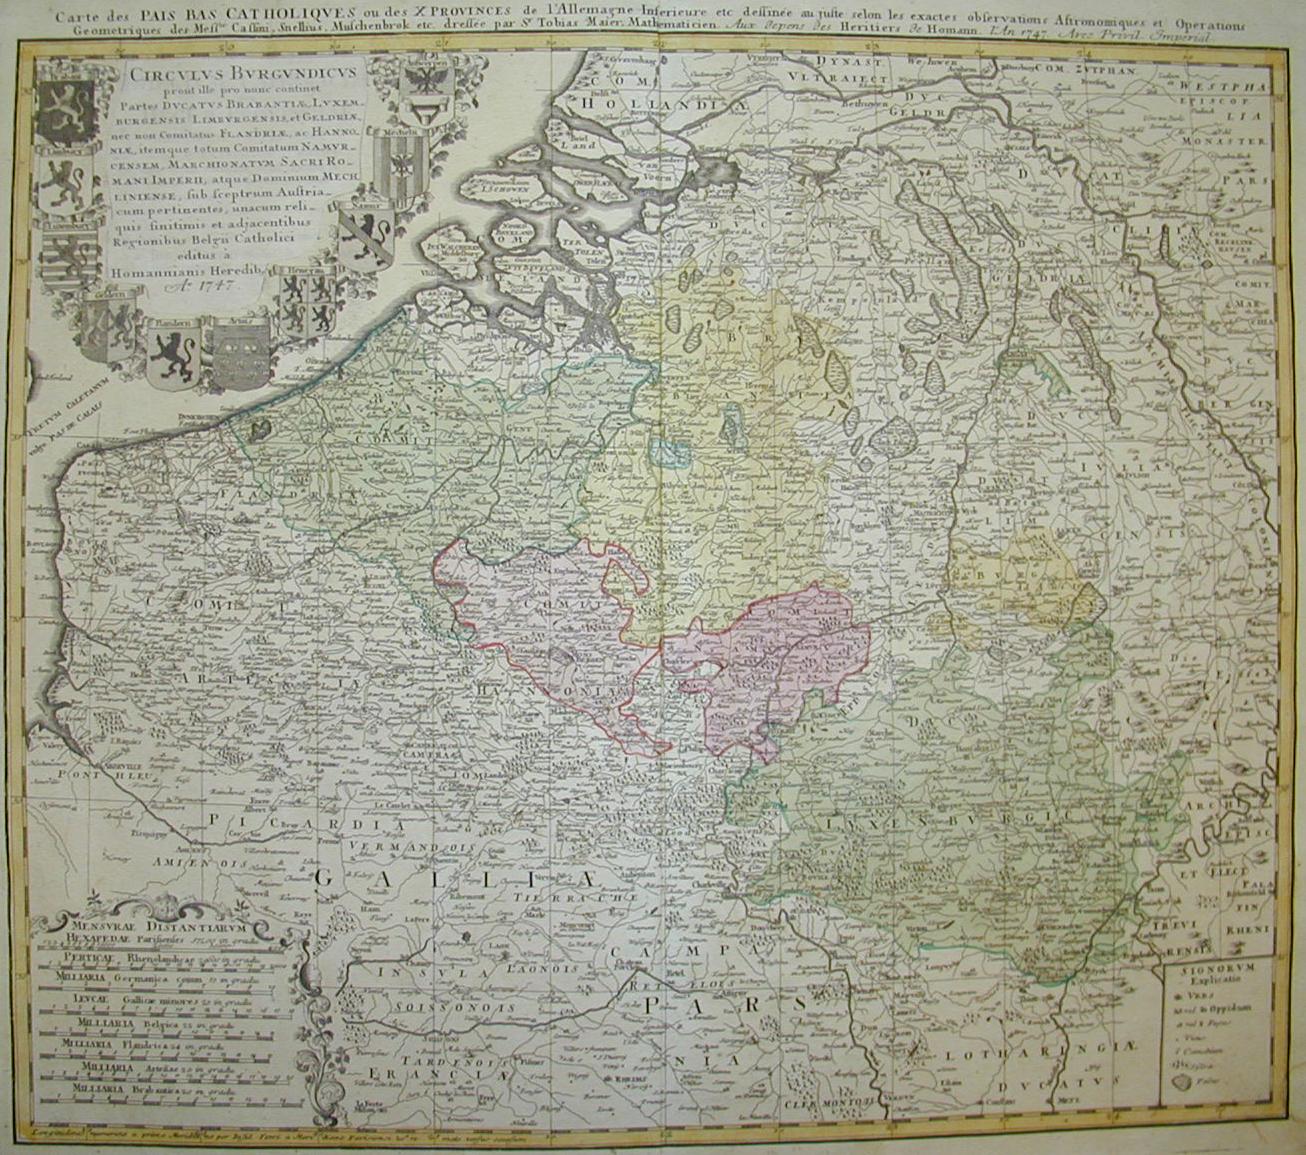 Paesi Bassi cattolici (Belgio, Olanda, Lussemburgo) 1747